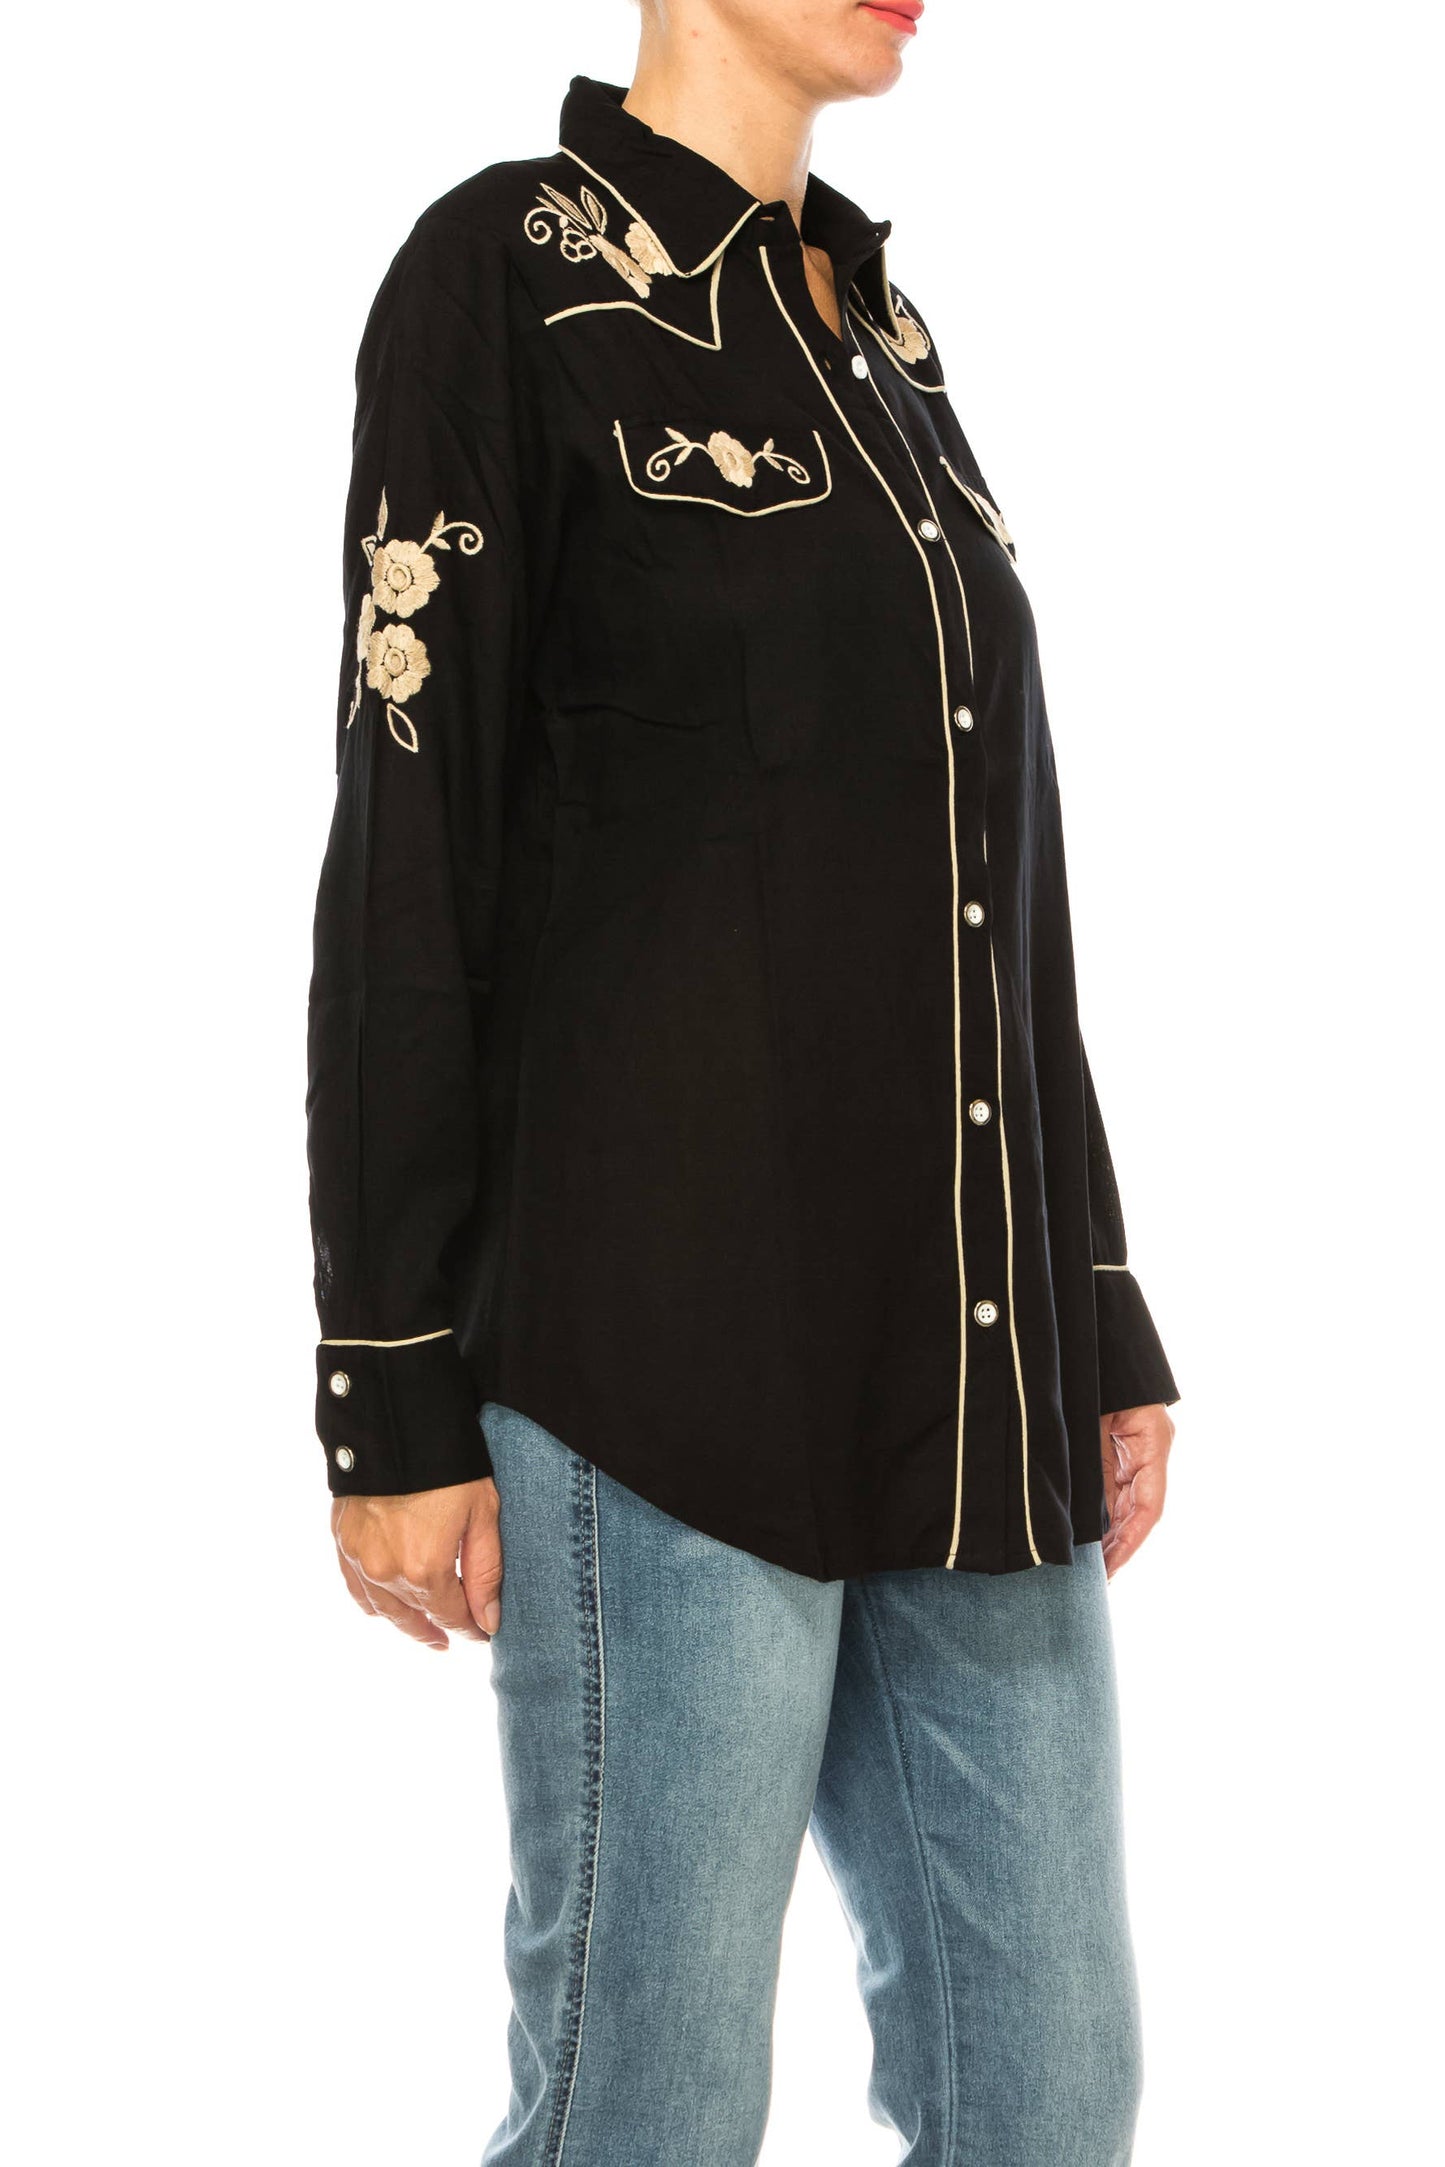 Magazine Clothing - Black Western Shirt with Embroidery: Medium